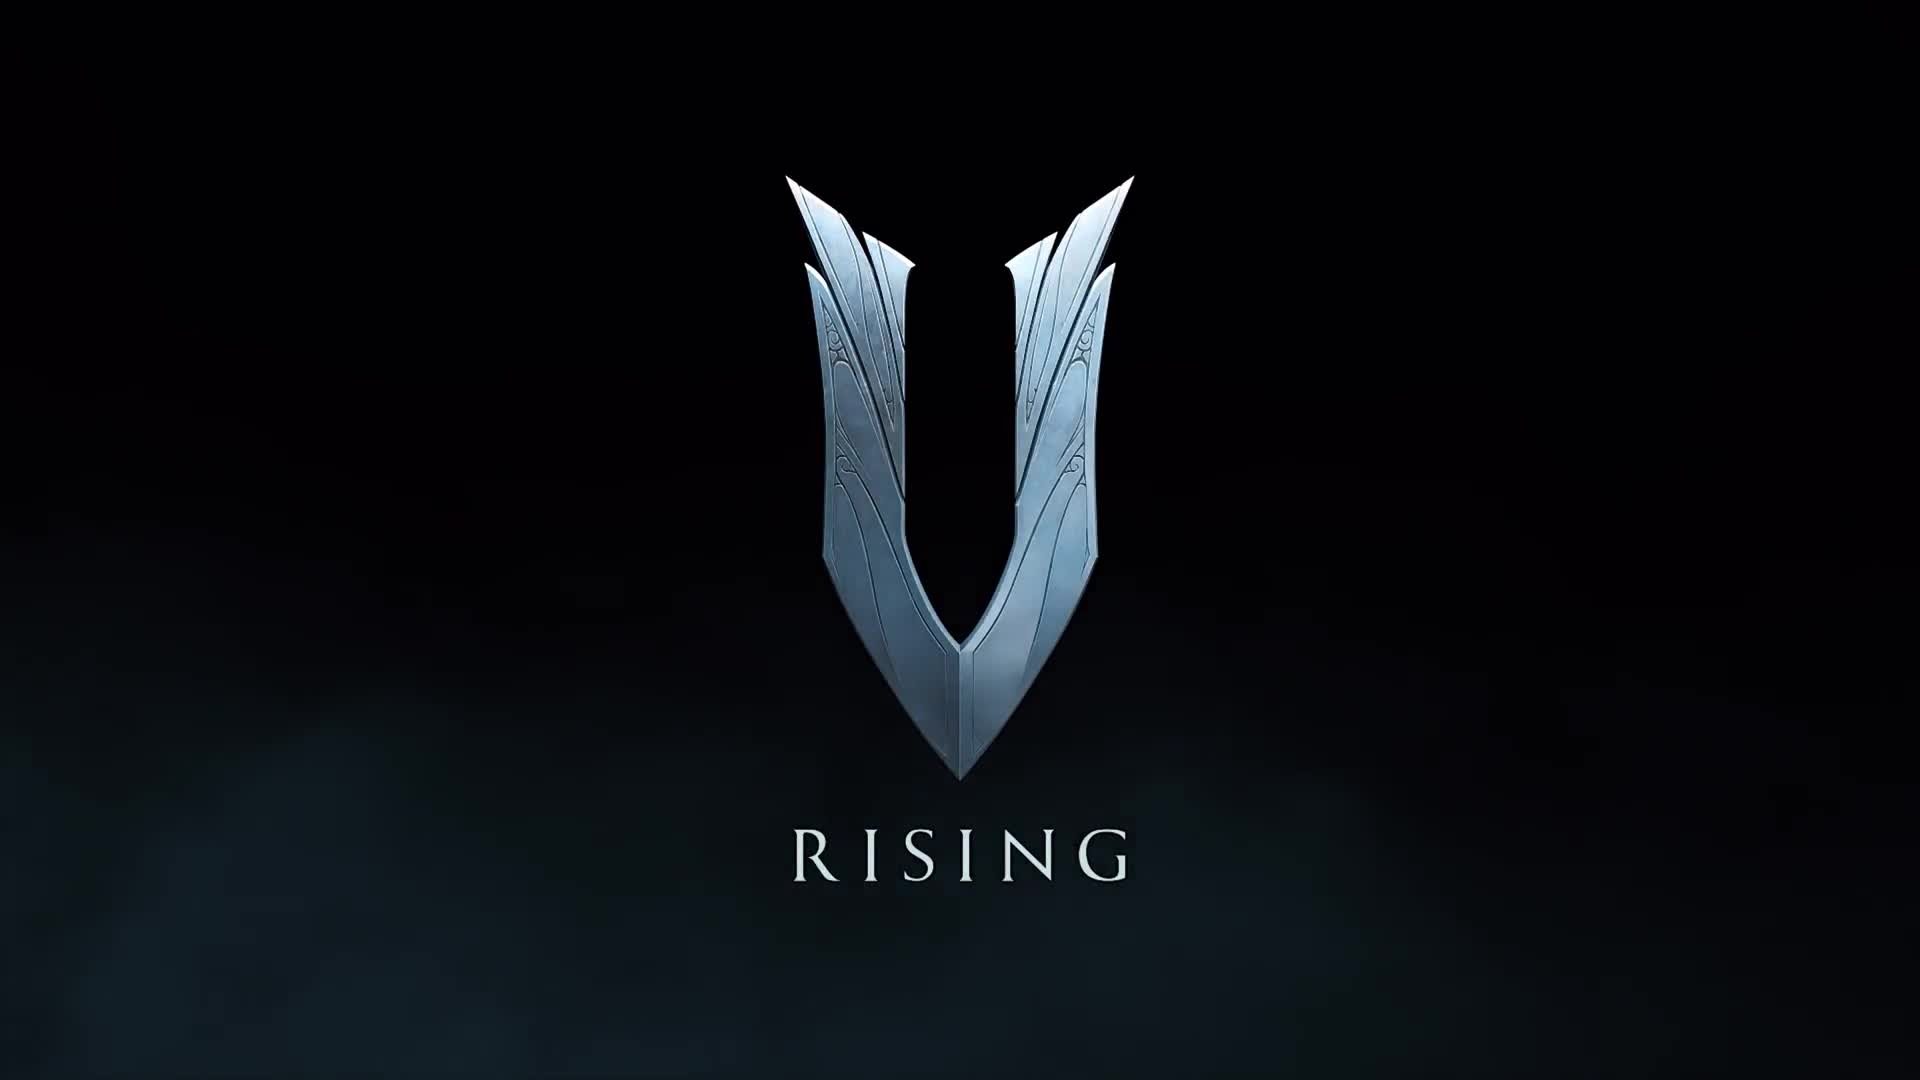 V Rising: Game poster, Game logo, V letter, Feeding on blood to gain new powers. 1920x1080 Full HD Wallpaper.